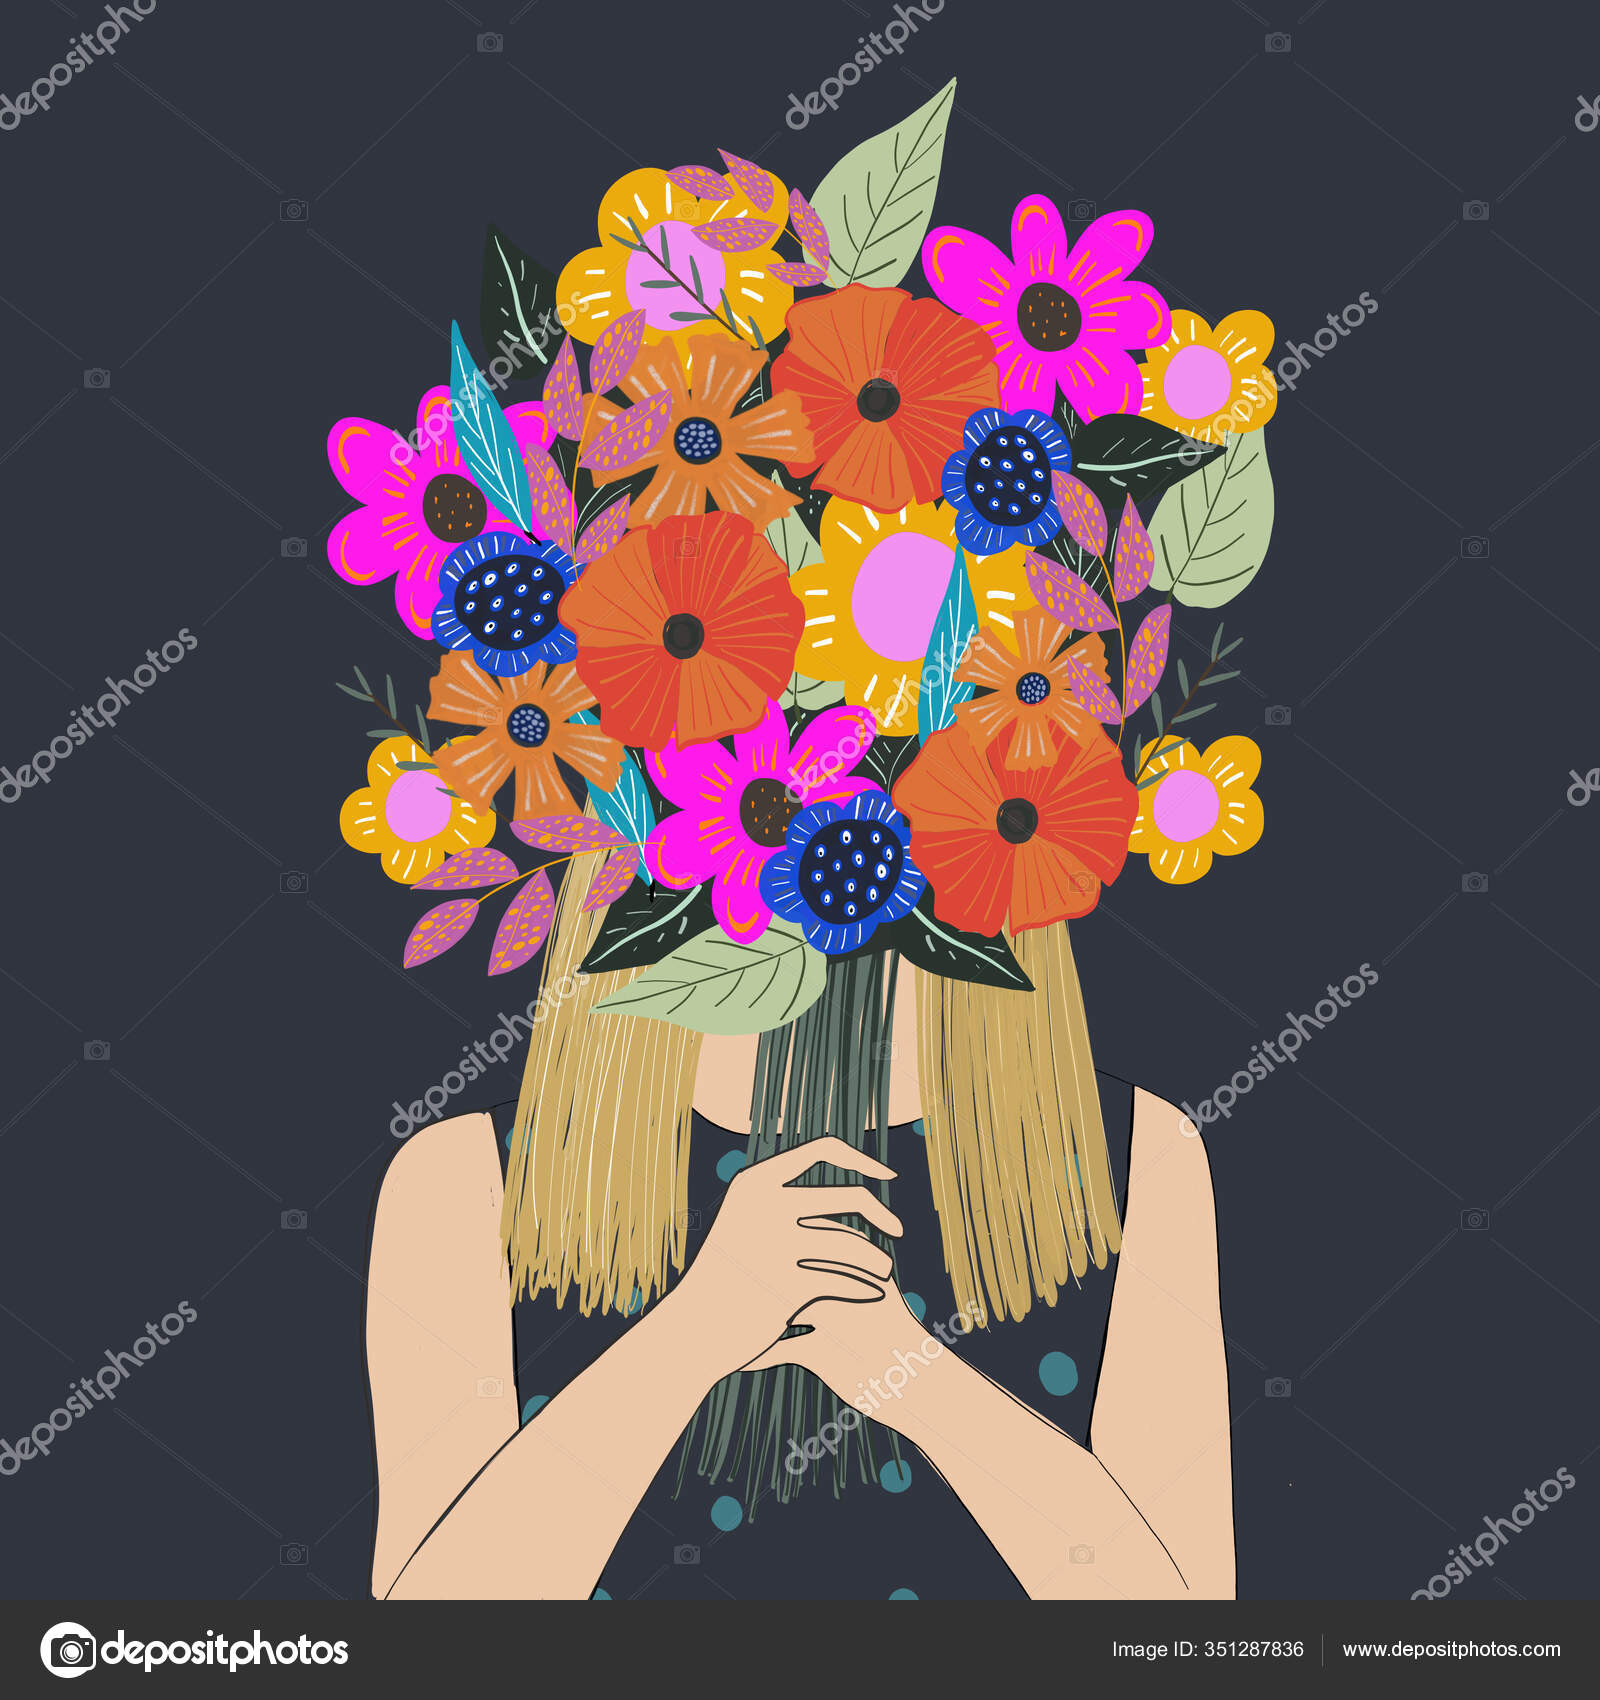 Ilustrasi Seorang Wanita Memegang Buket Bunga Yang Berwarna Warni Dan Stok Foto Miendienche 351287836